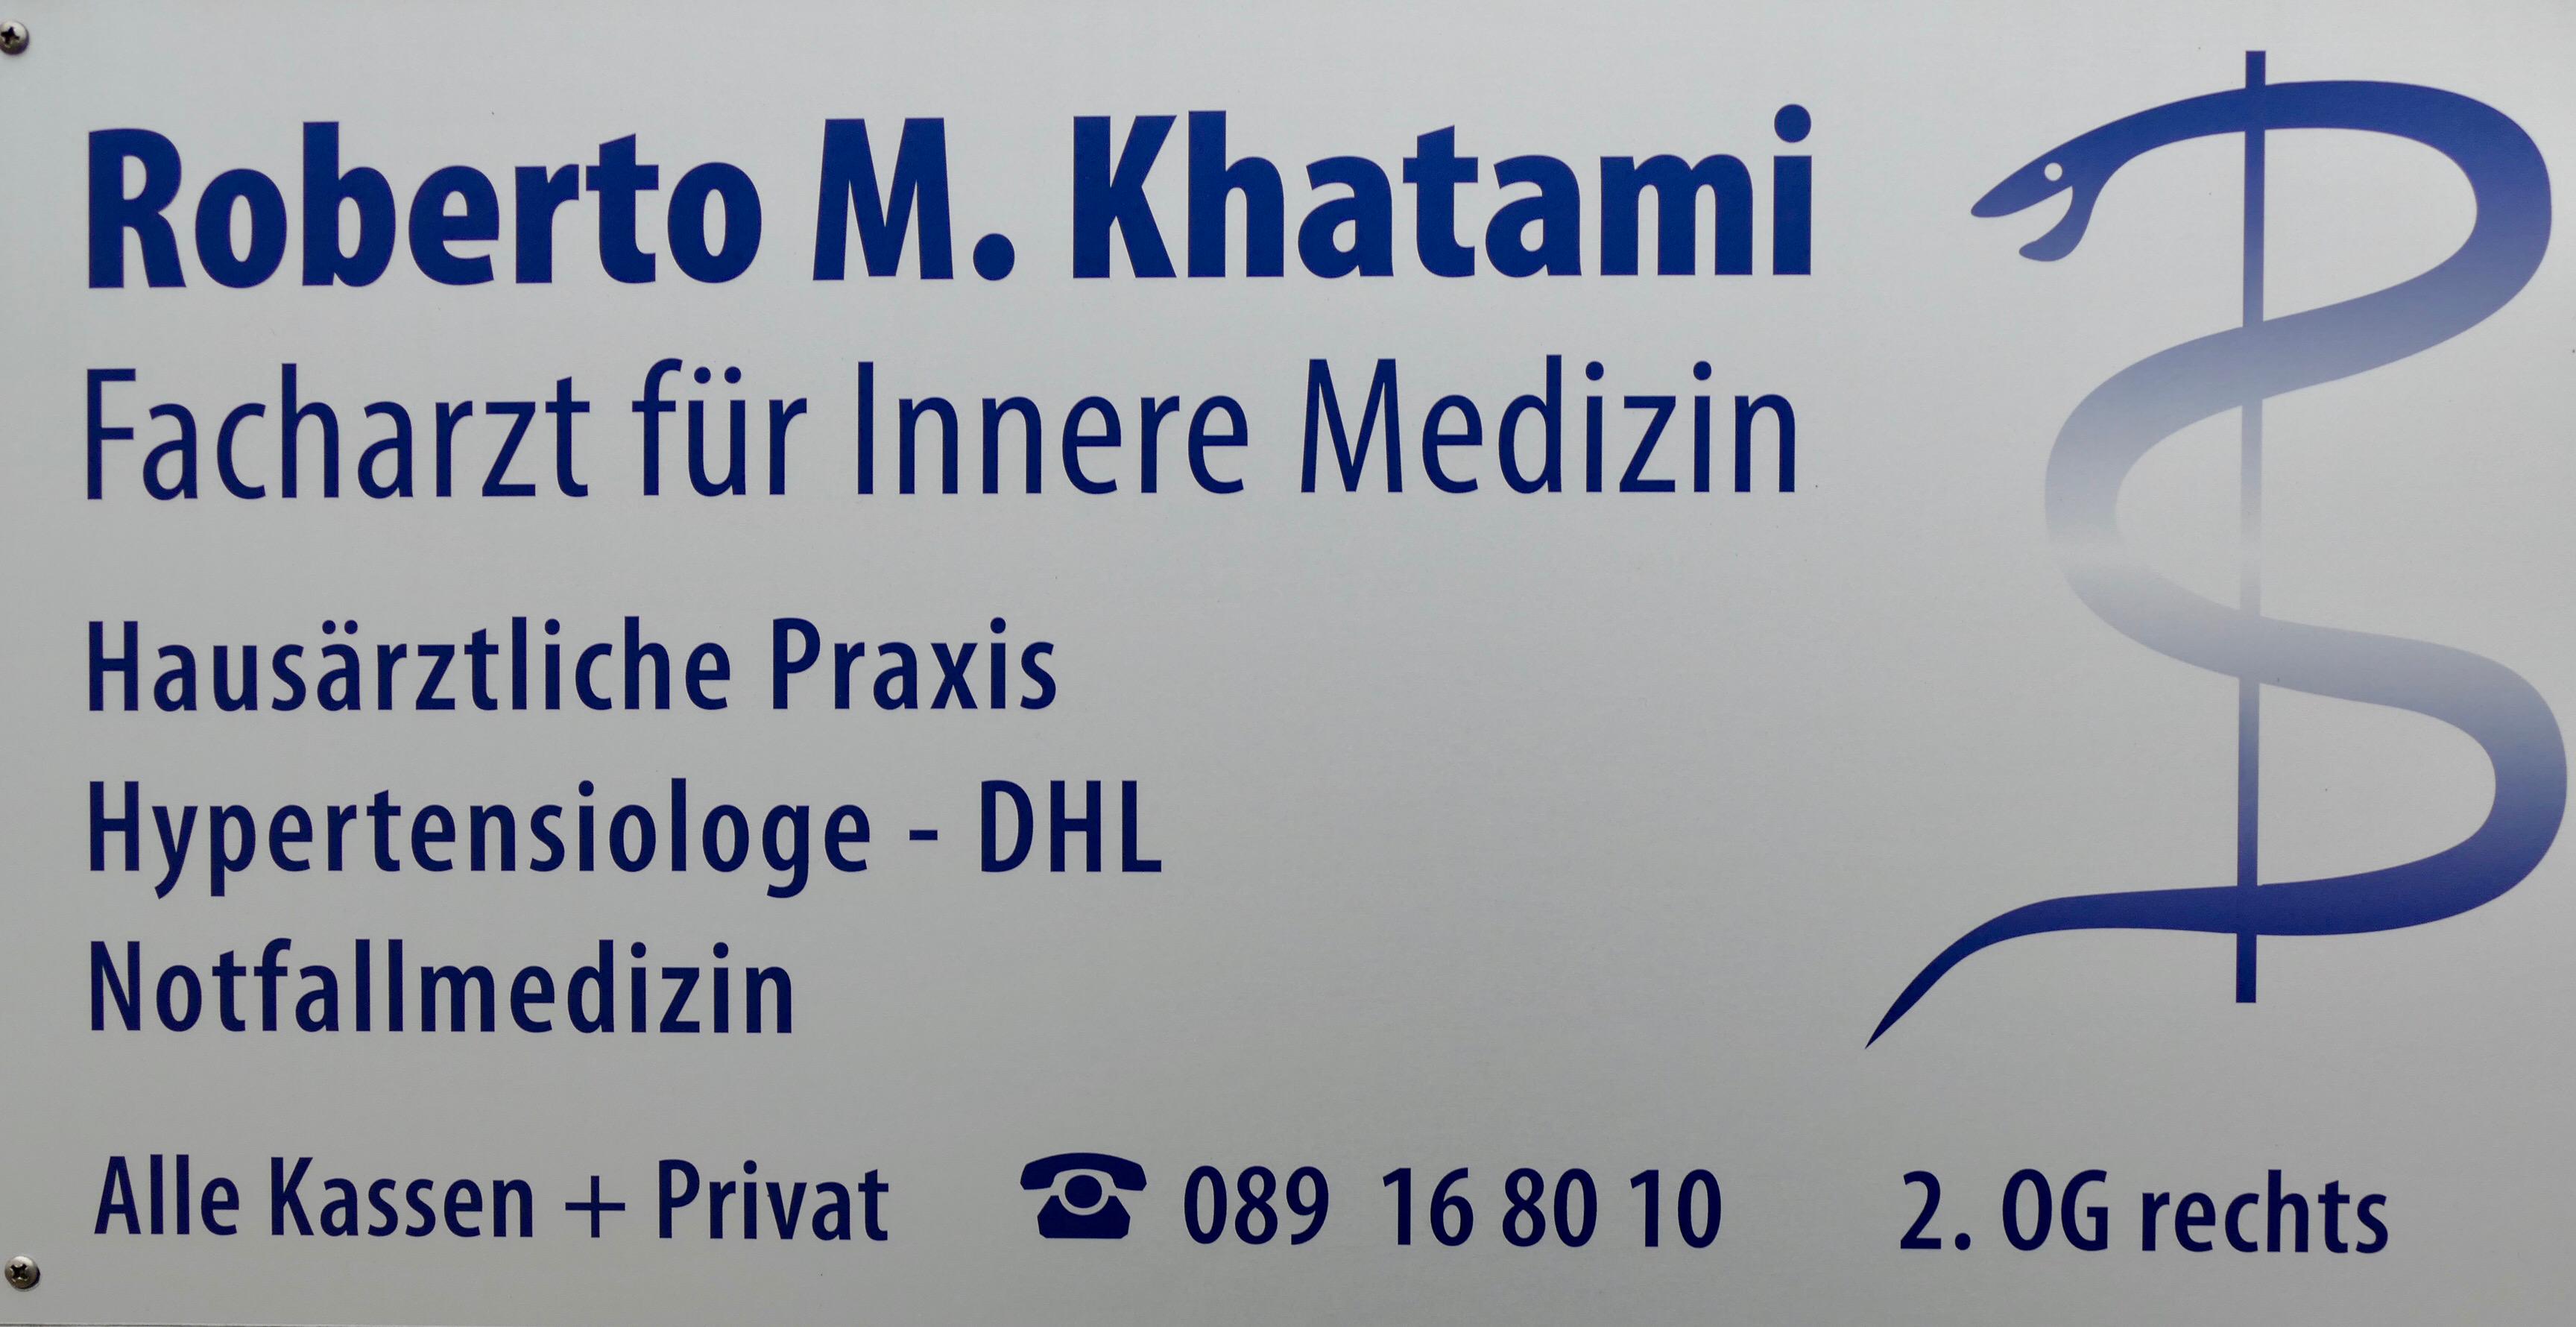 Hausarzt und Internist Khatami I München München 089 168010